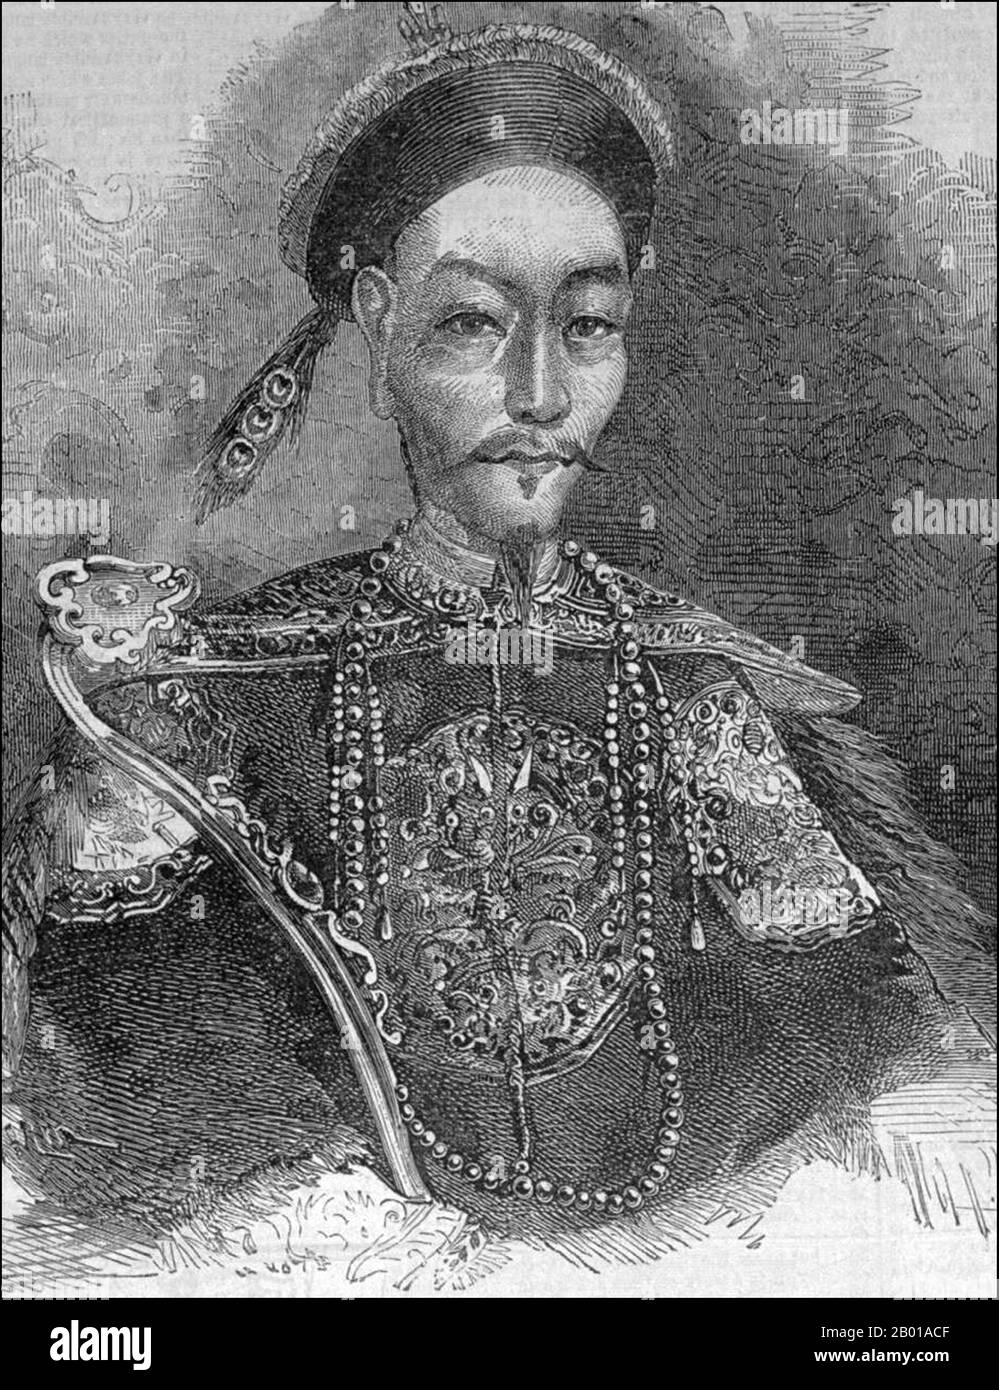 Cina: Disegno occidentale dell'imperatore Xianfeng (17 luglio 1831 - 22 agosto 1861) della dinastia Qing, 19th secolo. L'Imperatore Xianfeng (Hsien-feng), nato Yizhu e il nome del tempio Wenzong, fu l'ottavo Imperatore della dinastia Qing guidata da Manchu, e il settimo imperatore Qing a governare sulla Cina propria (r. 1850-1861). Il suo regno vide la dinastia Qing subire diverse guerre e ribellioni, come la ribellione di Taiping e la seconda guerra dell'Opium. Fu l'ultimo imperatore ad avere un potere di governo totale, e la dinastia Qing fu controllata dall'imperatrice Dowager Cixi dopo la sua morte relativamente giovane per iperindulgenza. Foto Stock